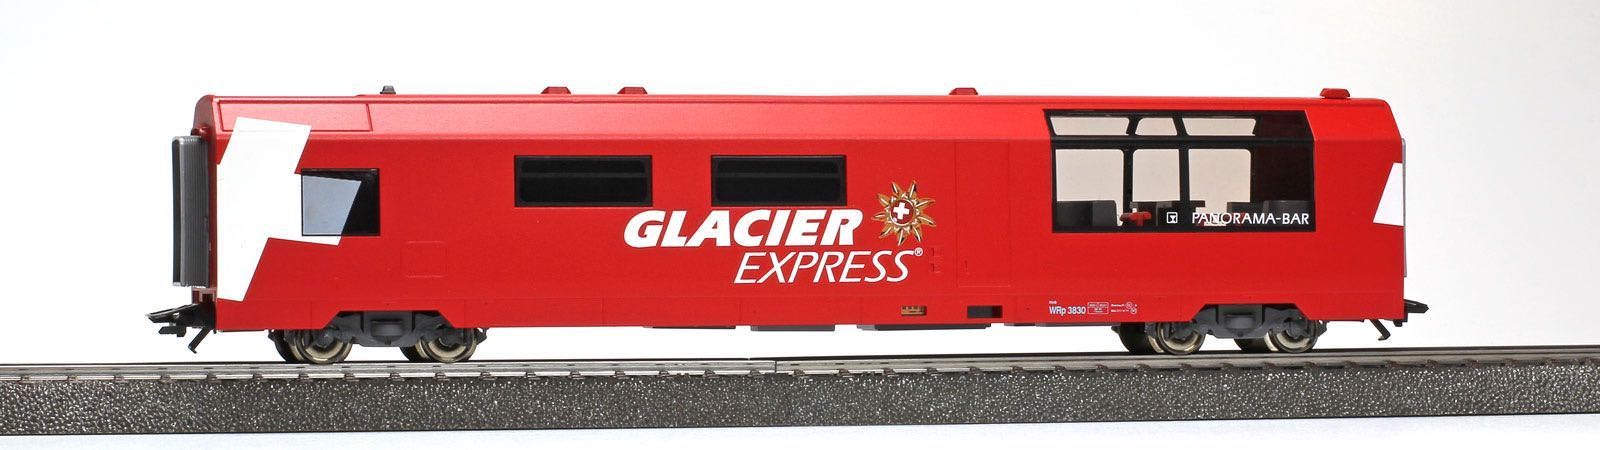 Bemo 3589132 - Servicewagen RhB WRp 3832 Glacier-Express H0/WS